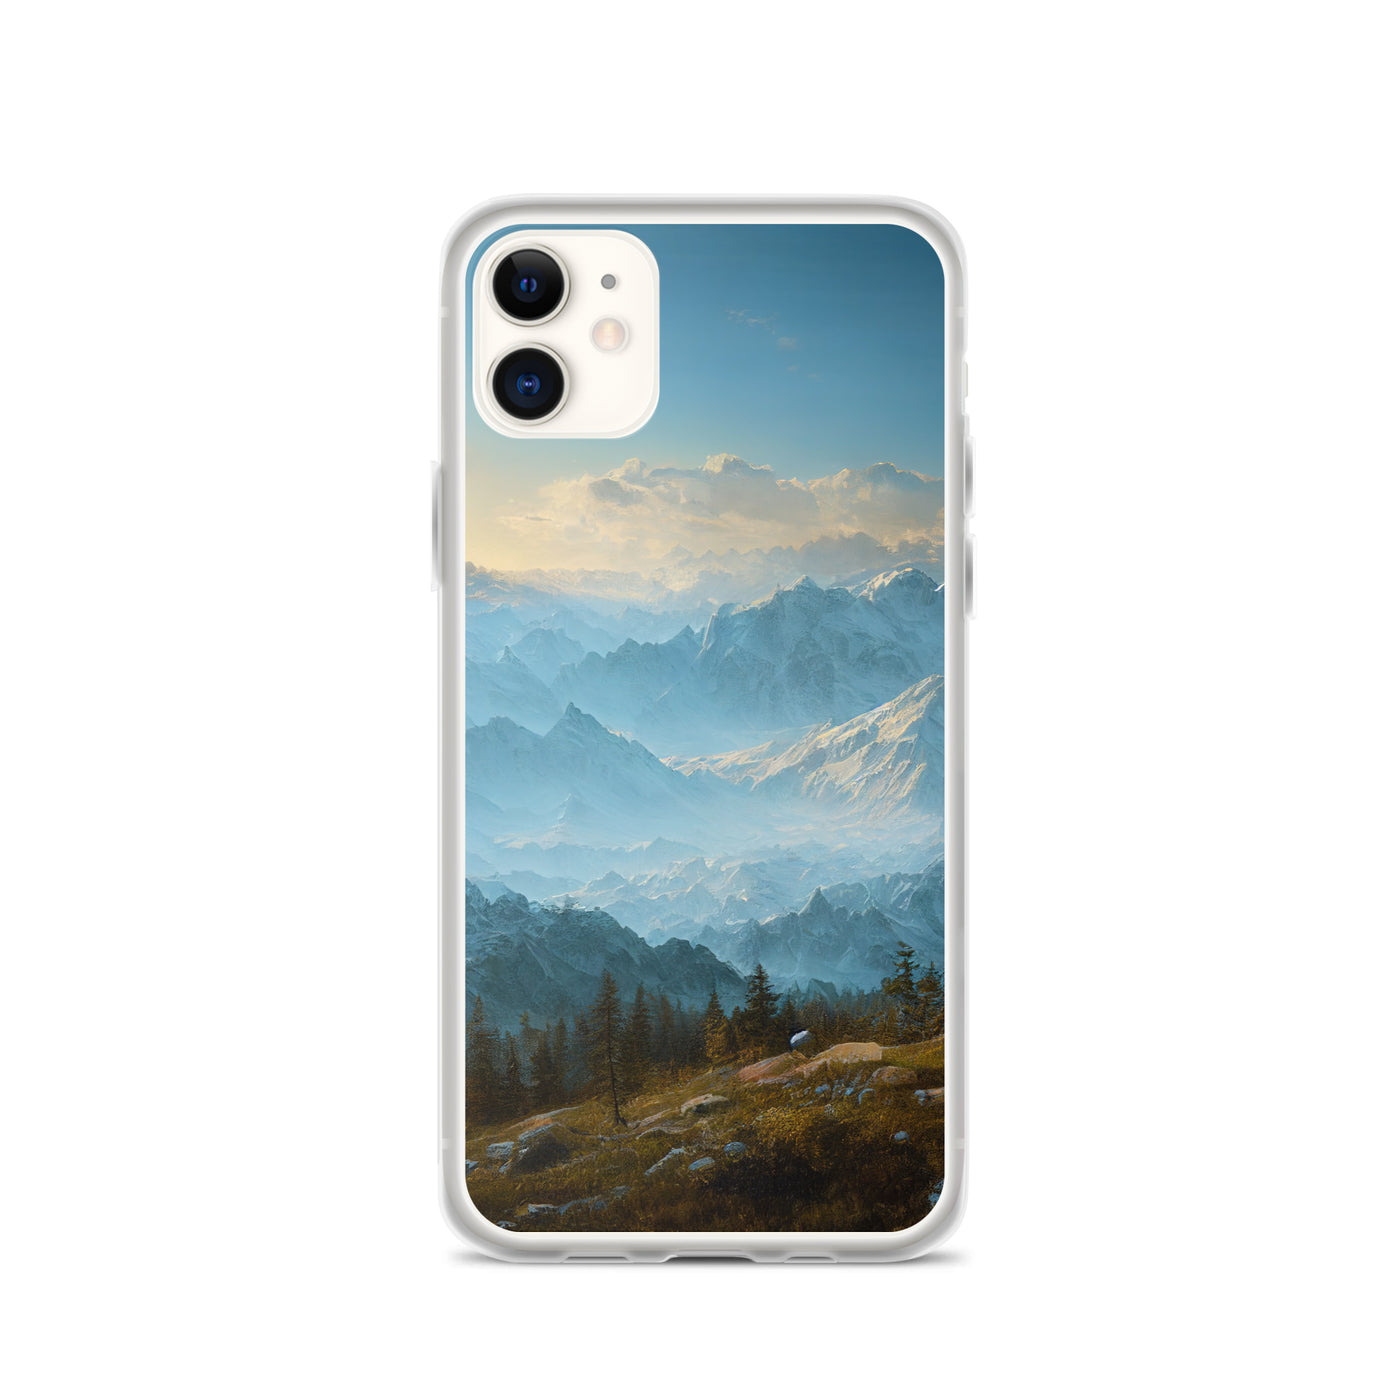 Schöne Berge mit Nebel bedeckt - Ölmalerei - iPhone Schutzhülle (durchsichtig) berge xxx iPhone 11